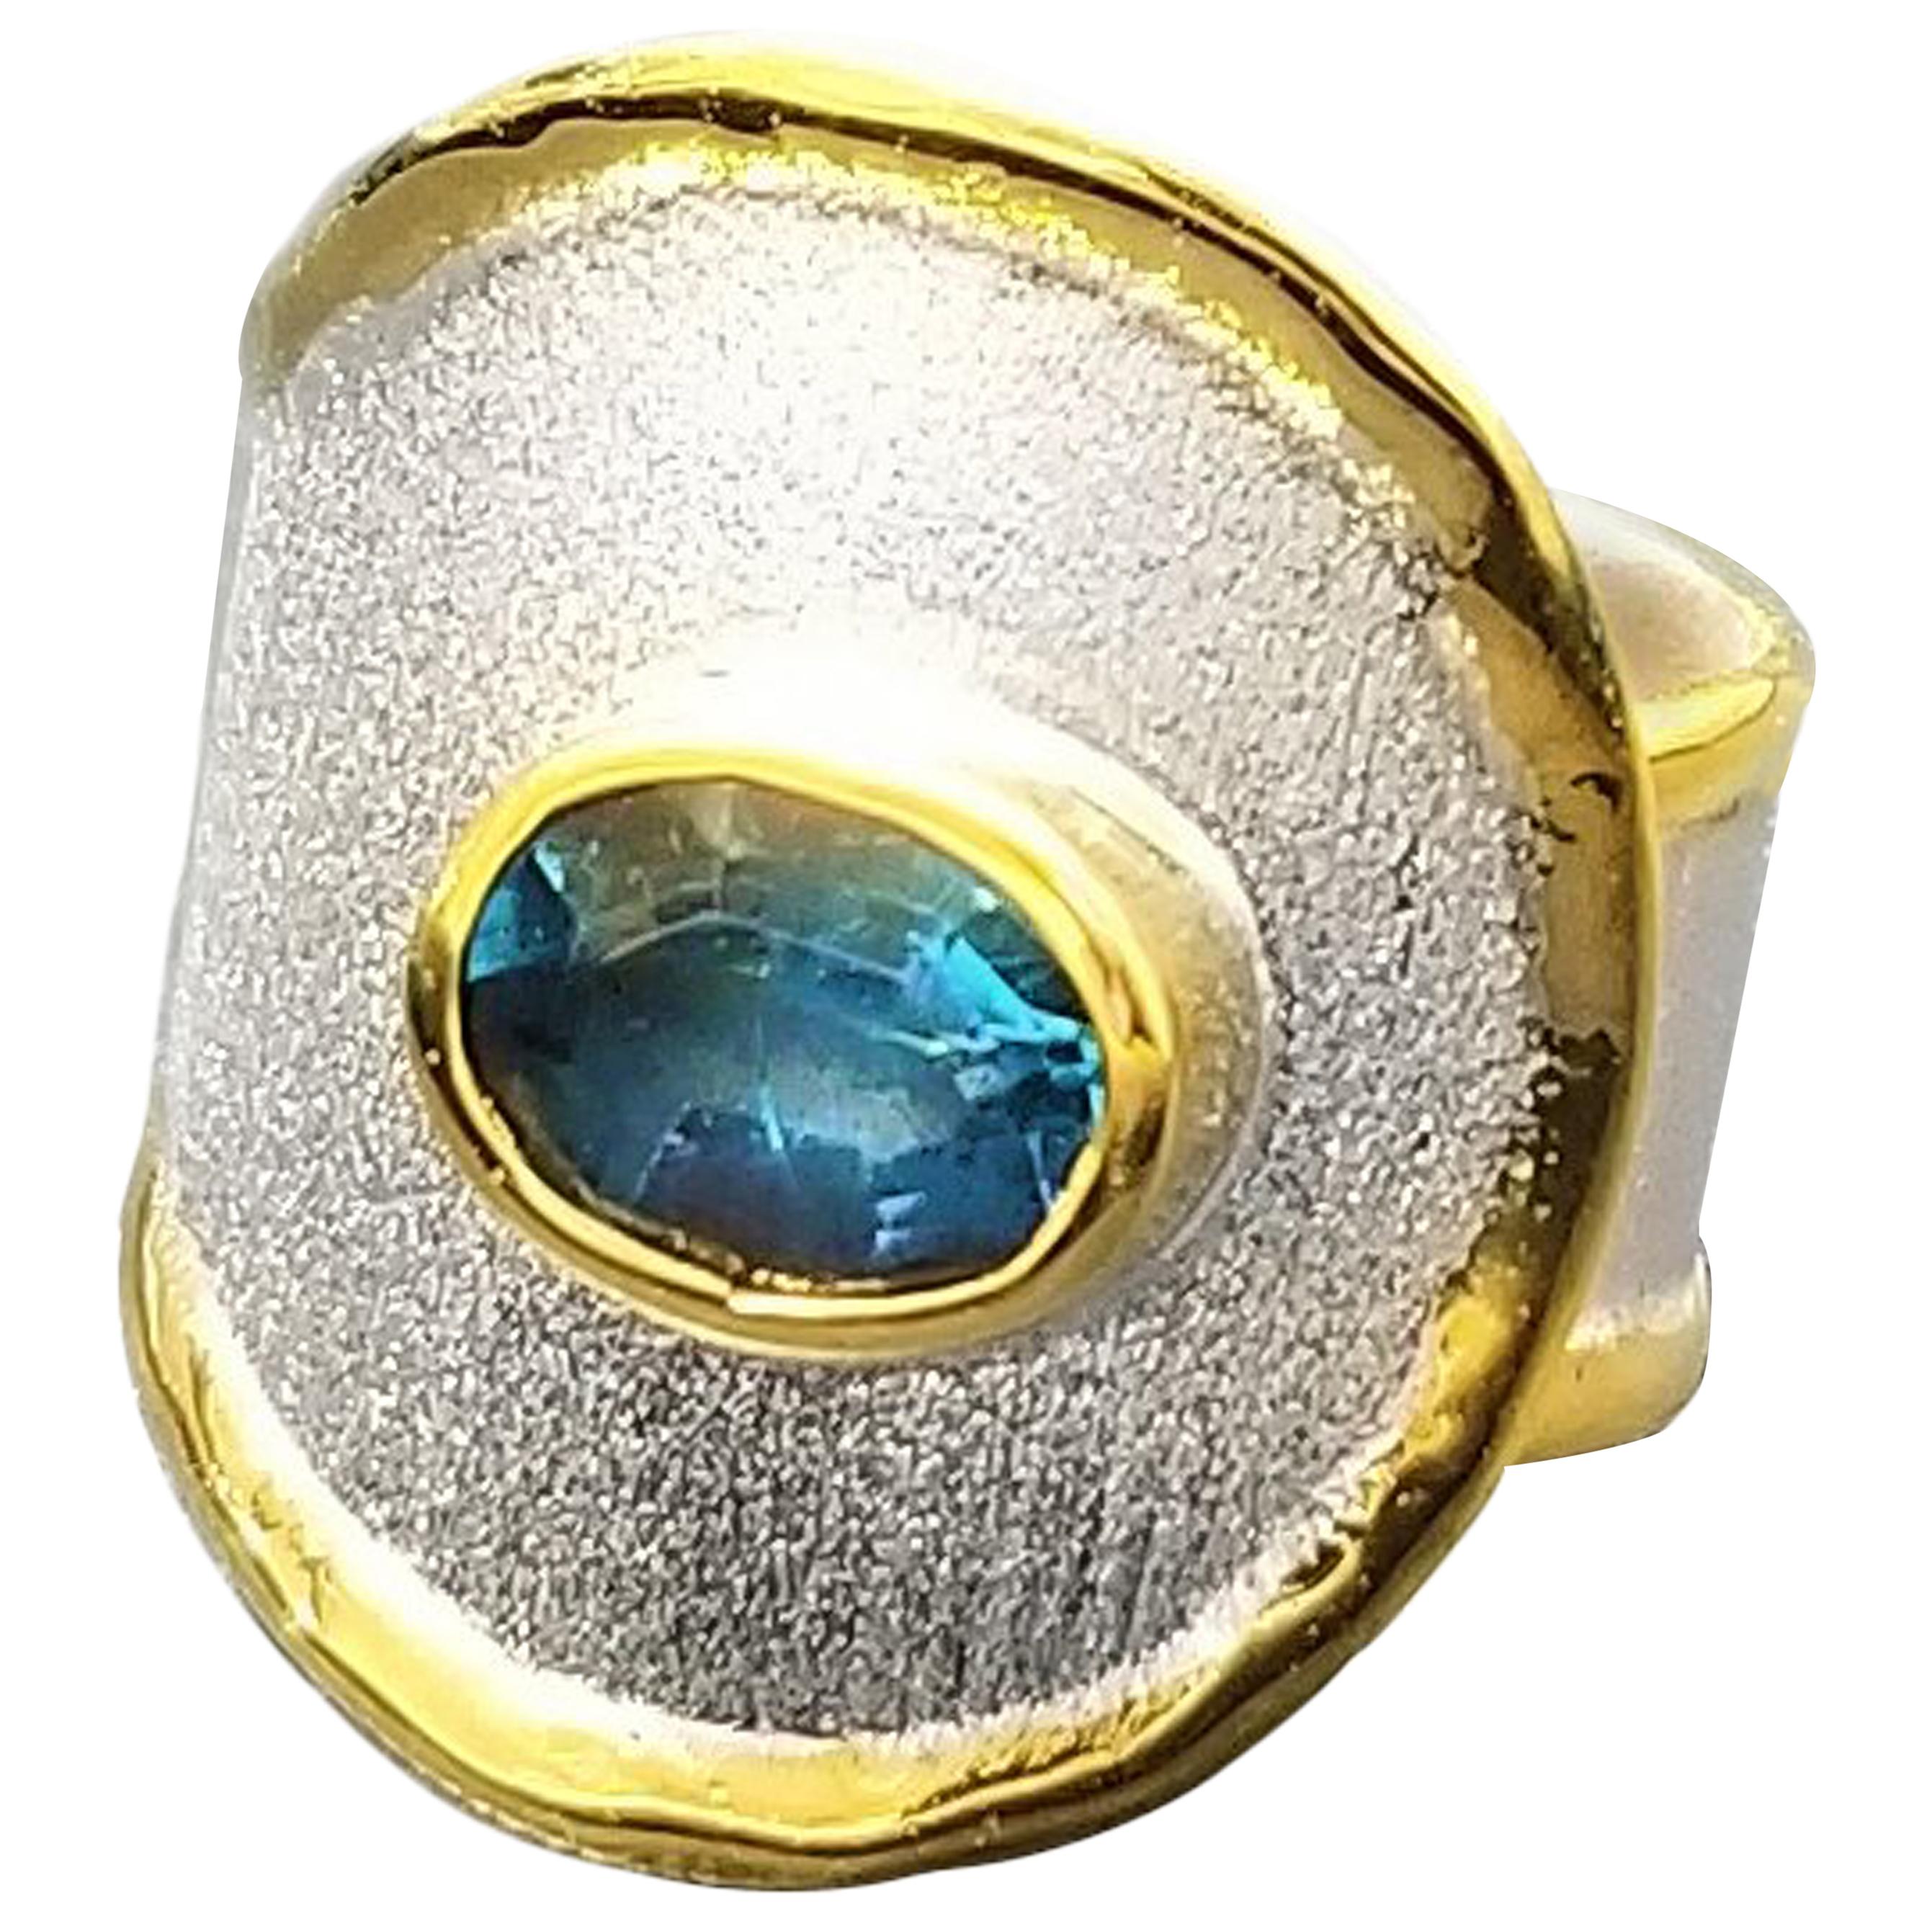 Yianni Creations präsentiert einen 100% handgefertigten Bandring aus der Midas Collection. Dieser schöne Ring ist aus 950er Feinsilber gefertigt und mit Palladium beschichtet, um den Elementen zu widerstehen. Die Flüssigkeitsränder sind rundherum